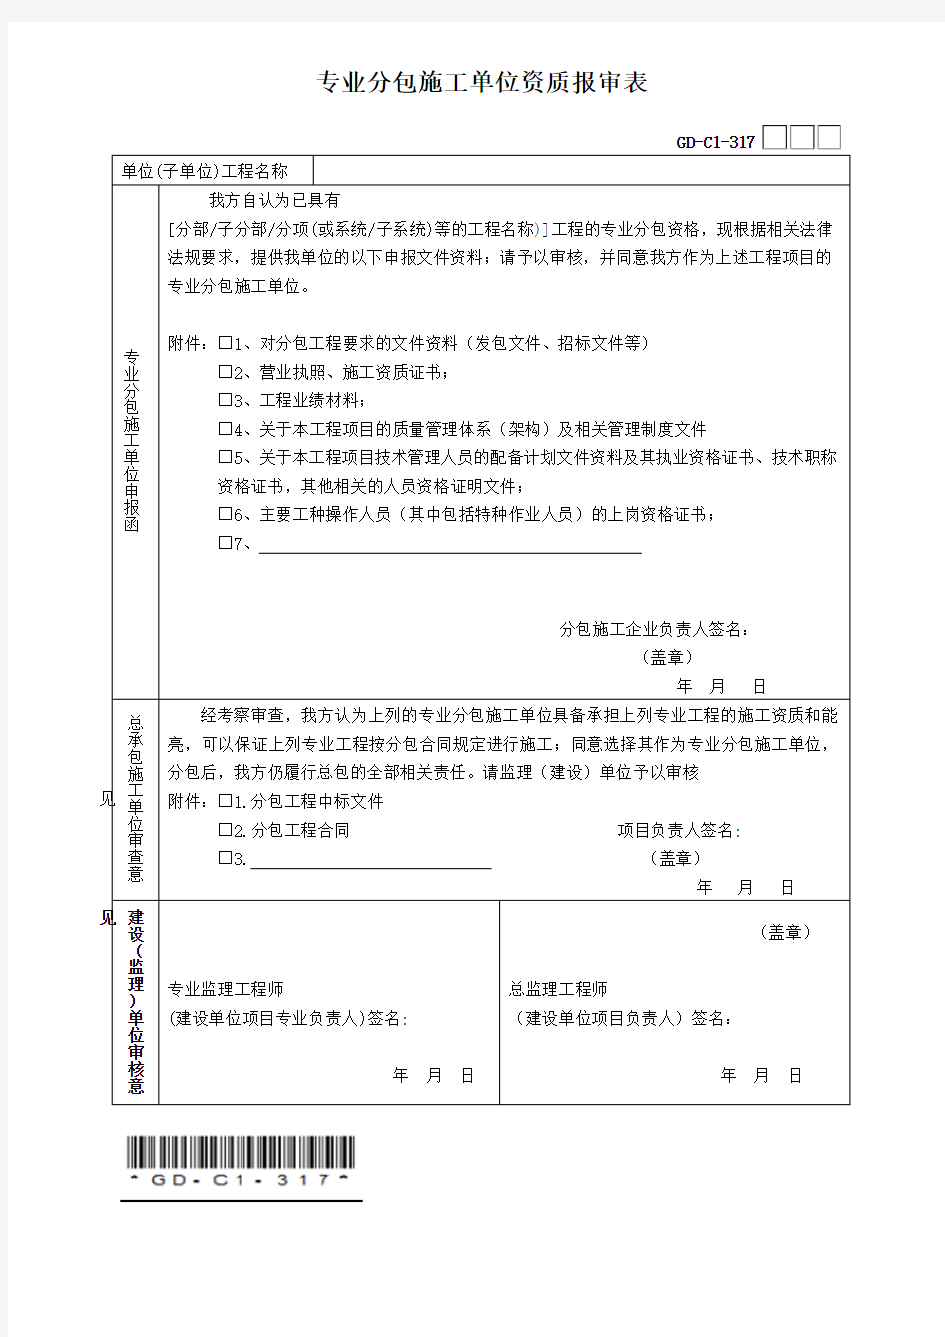 专业分包施工单位资质报审表(广东省统一用表2017版带二维码)